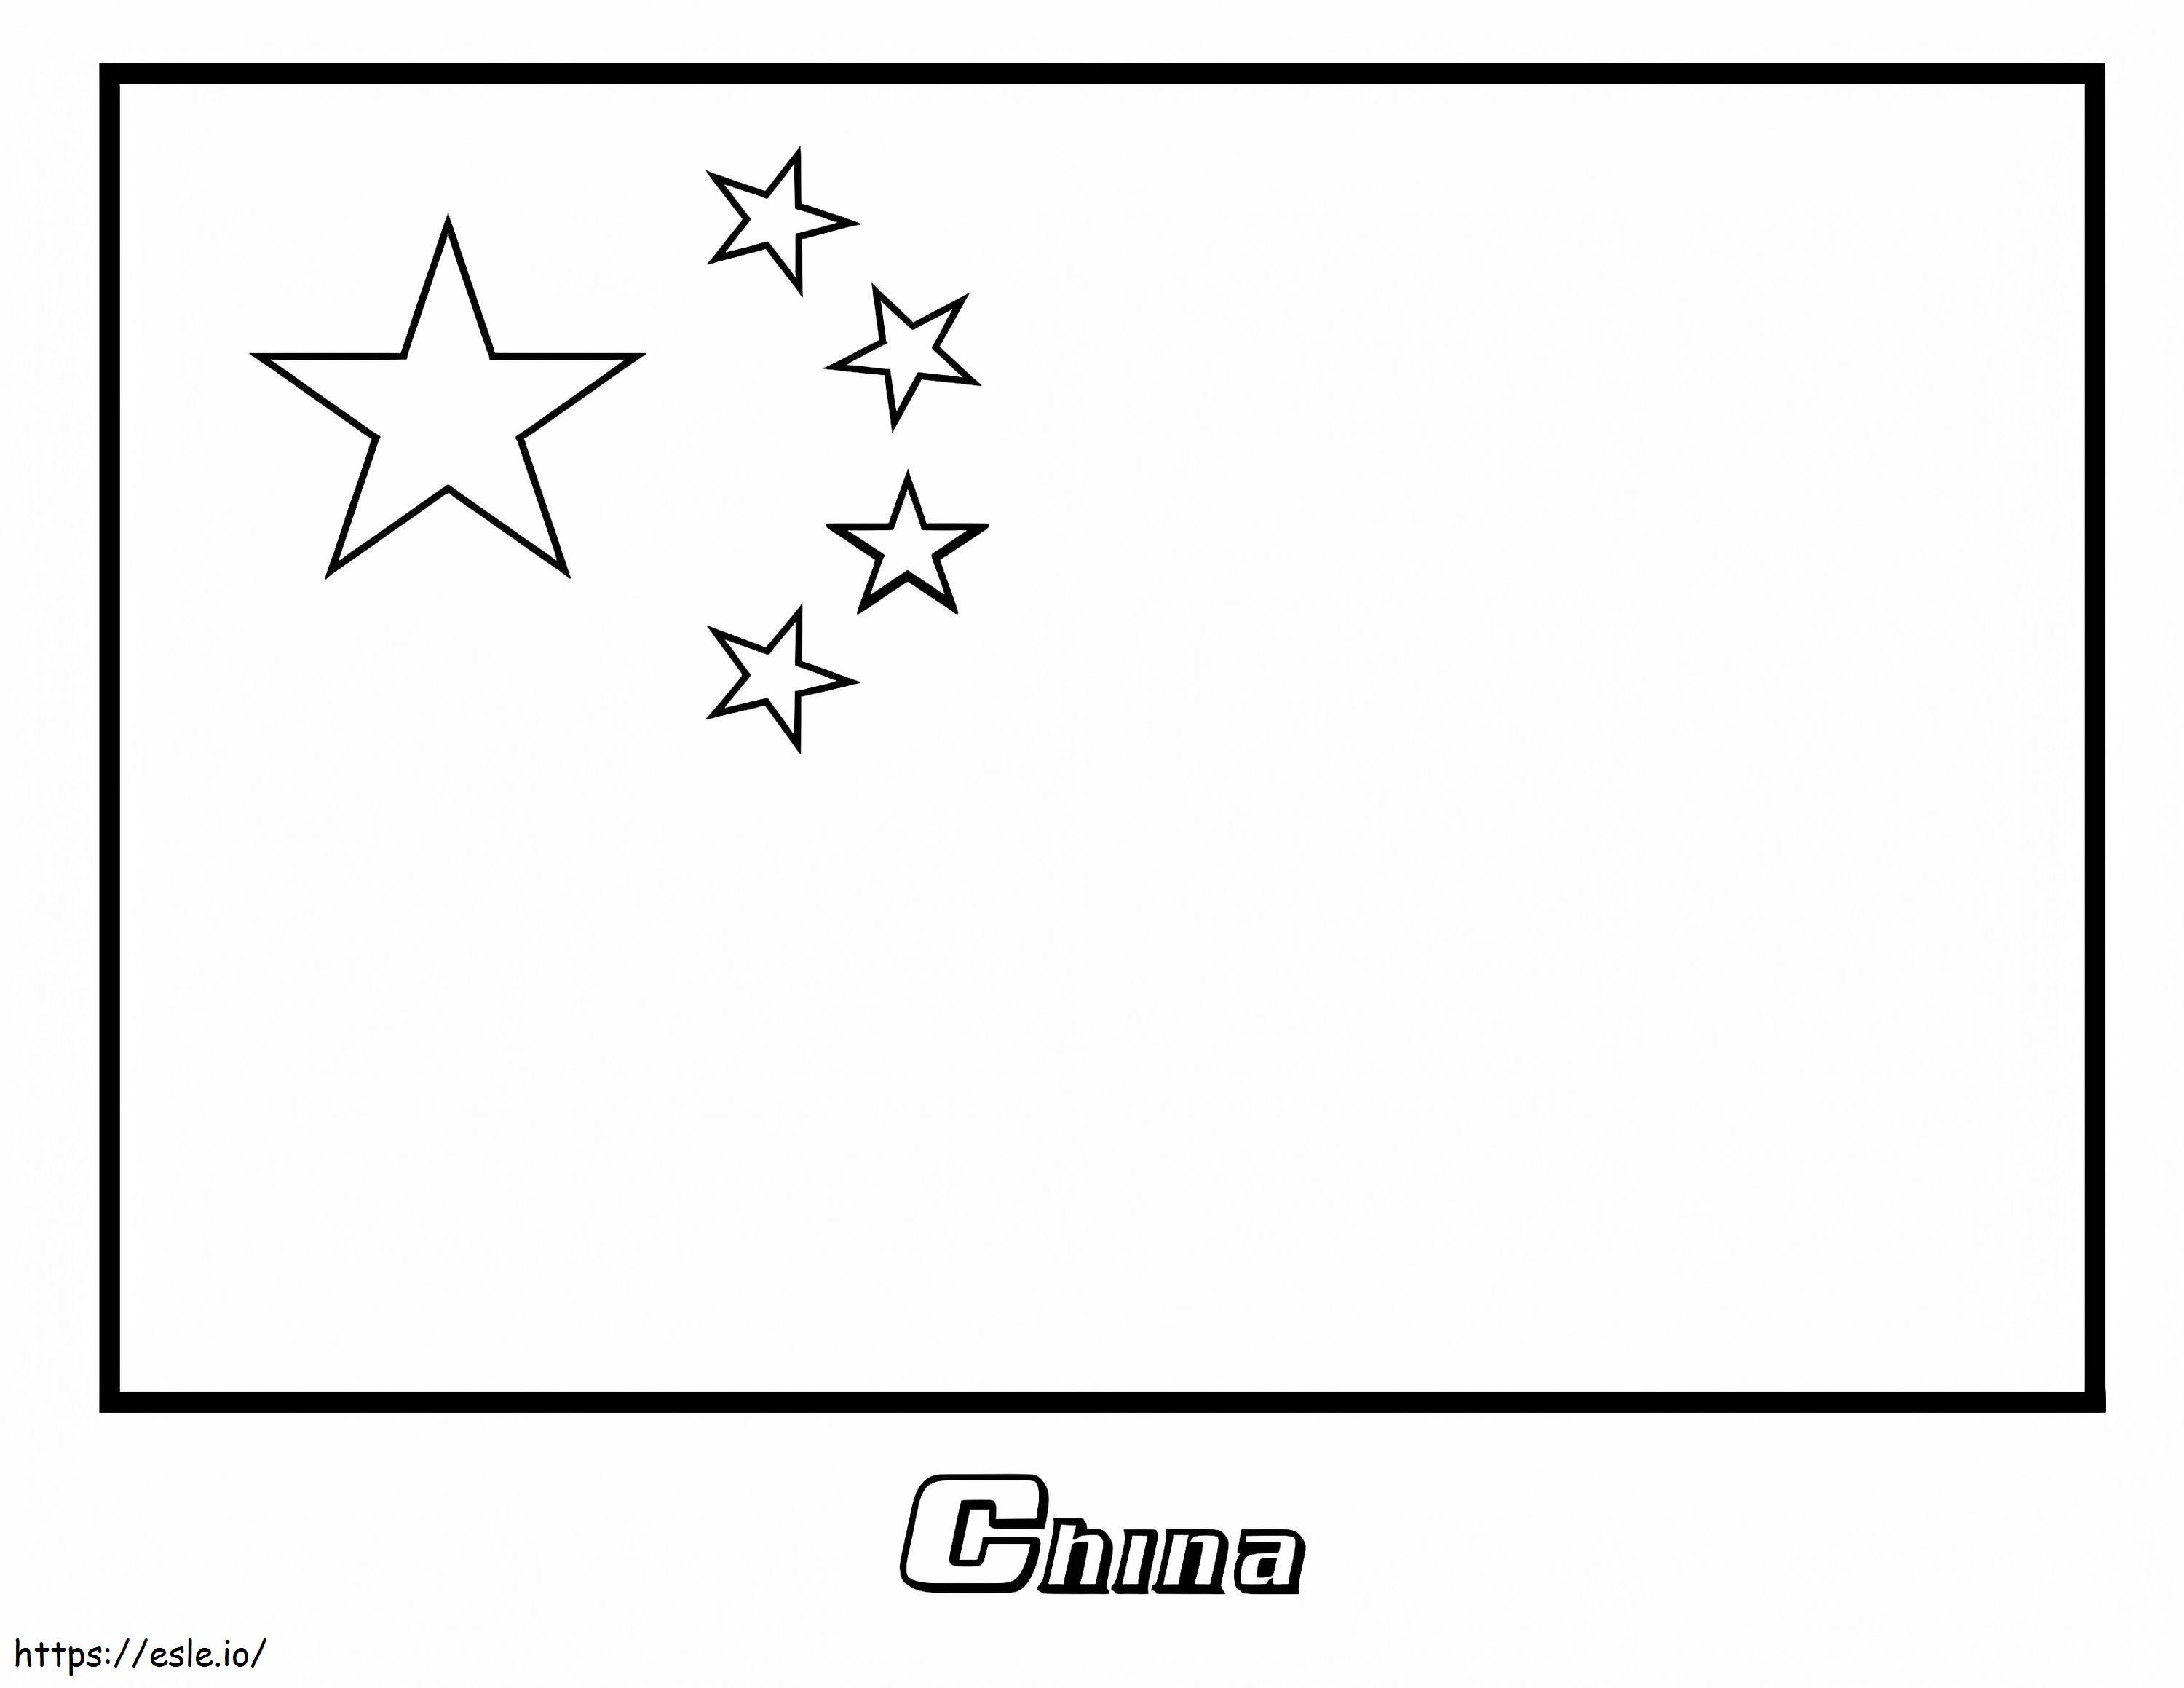 Çin Bayrağı boyama